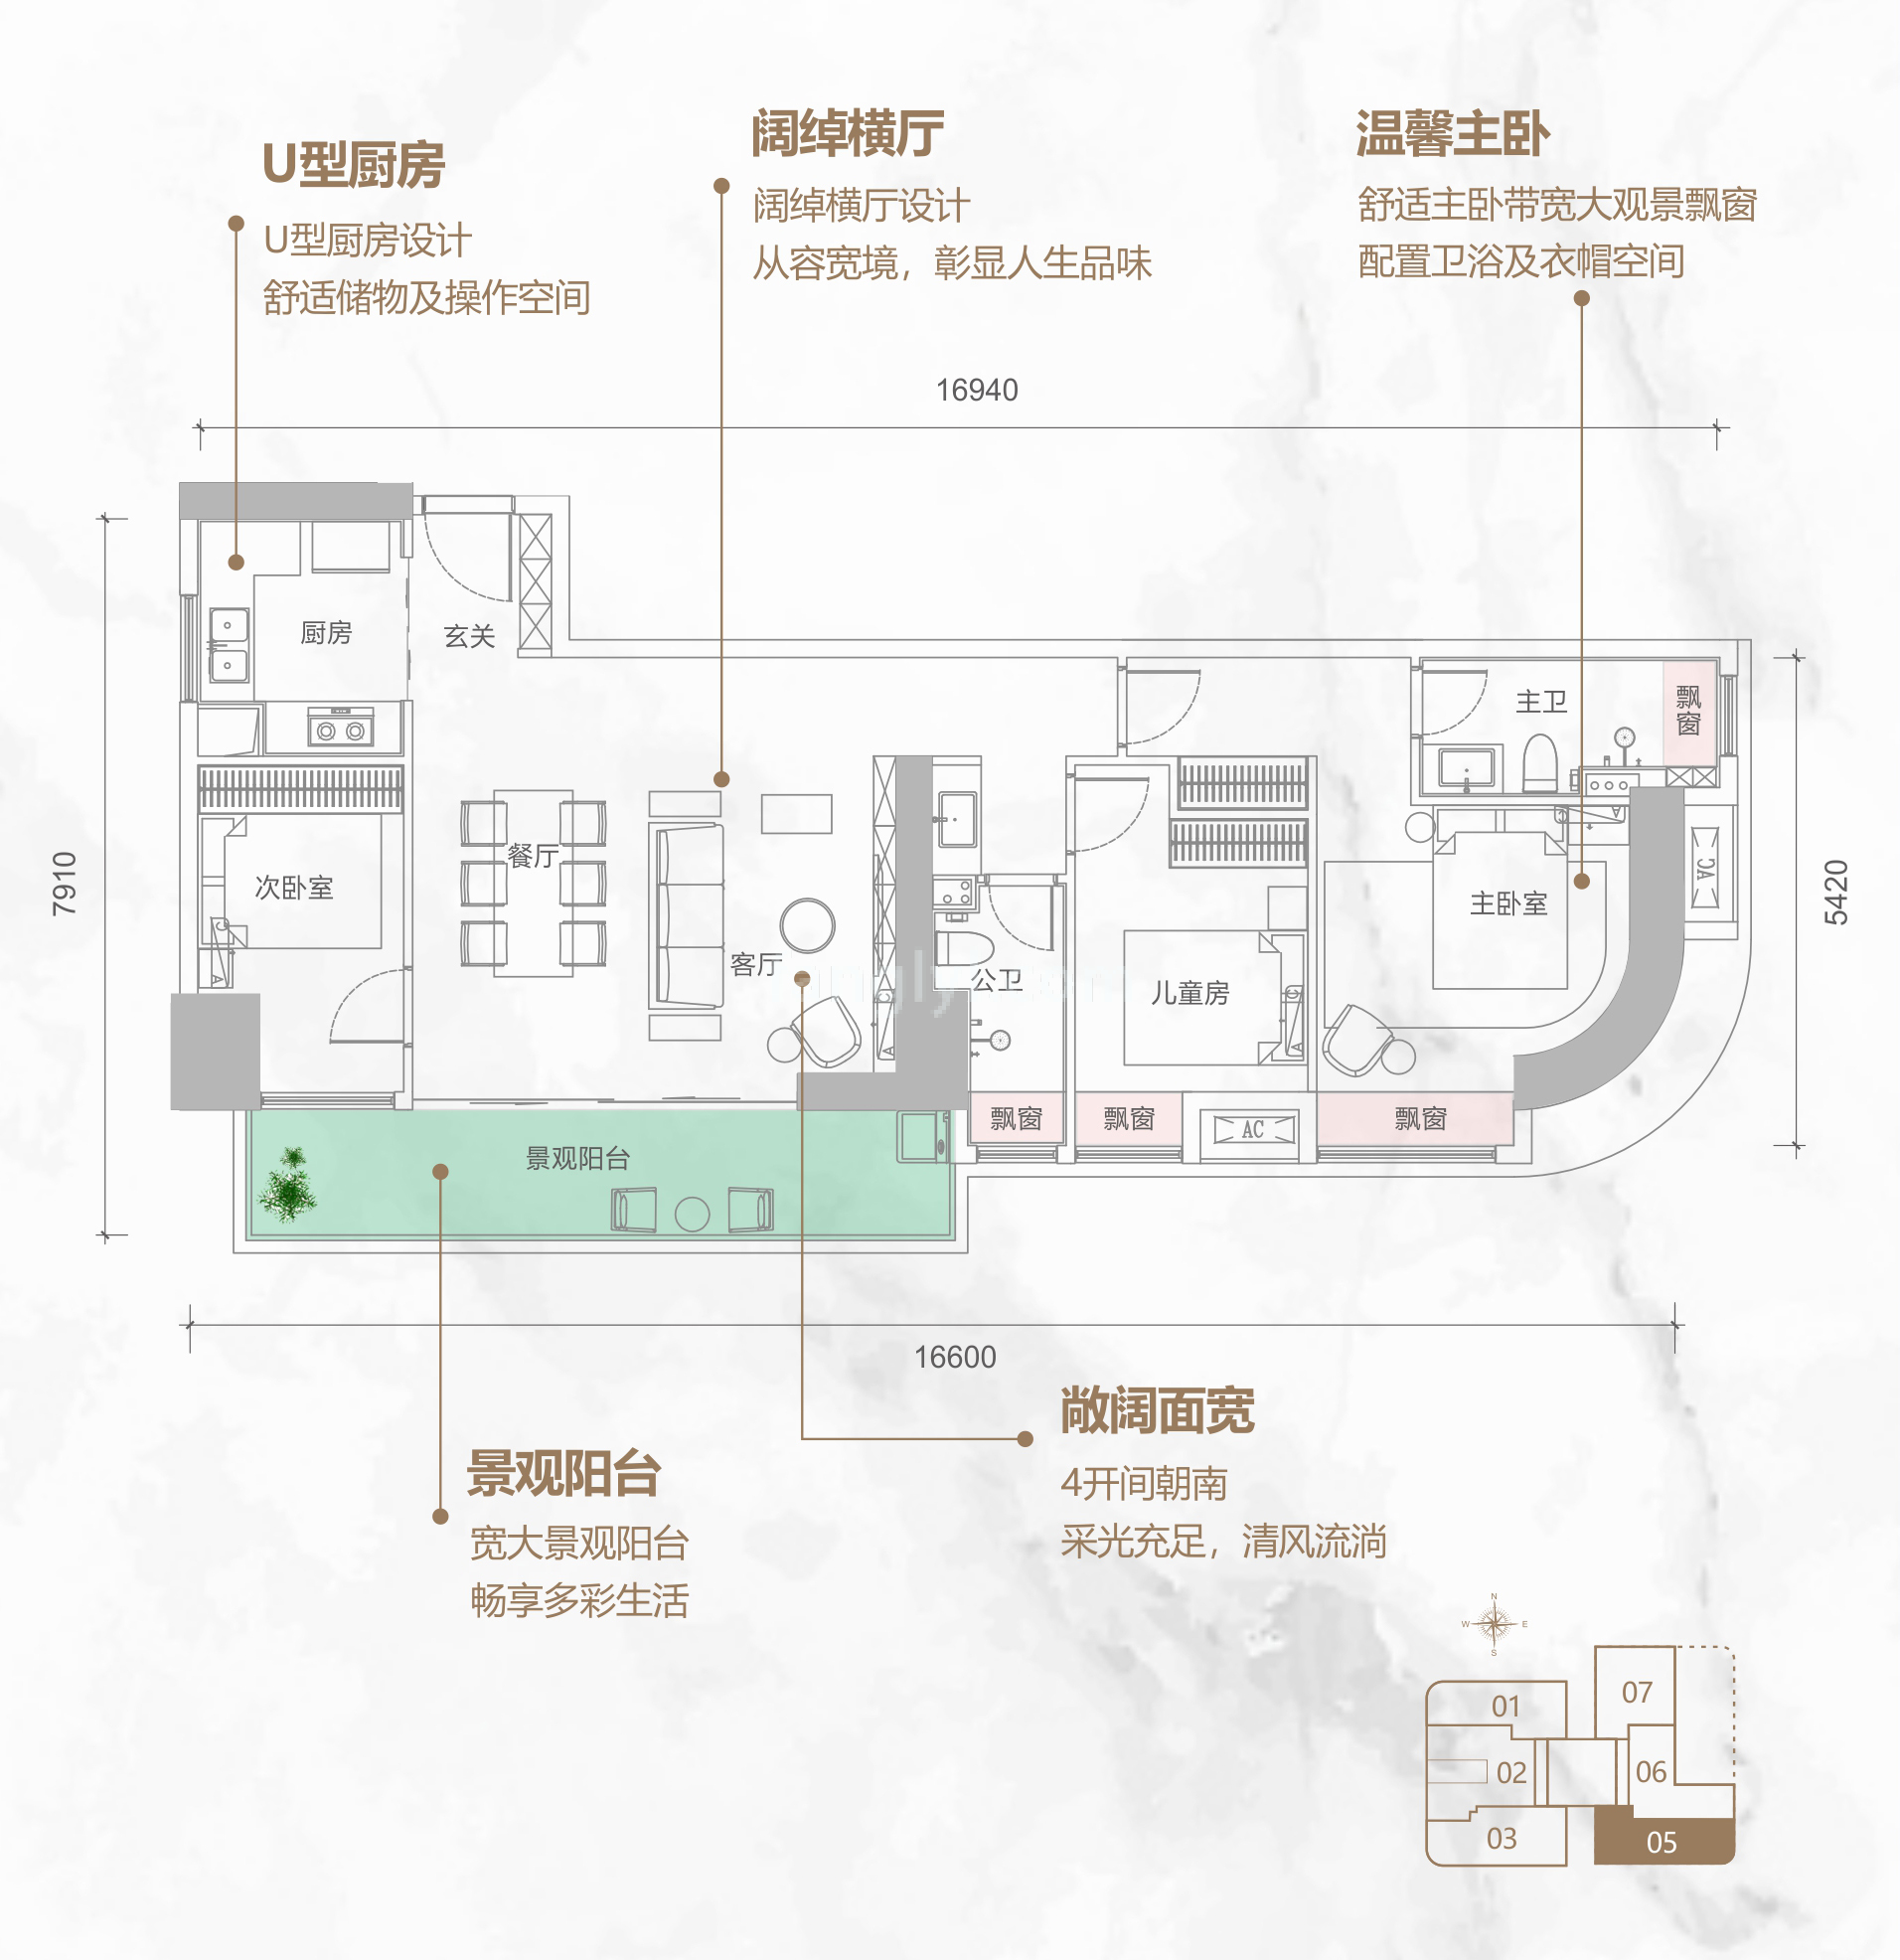 同康江语海 高层 A-05户型 3房2厅2卫 建筑面积117㎡ 